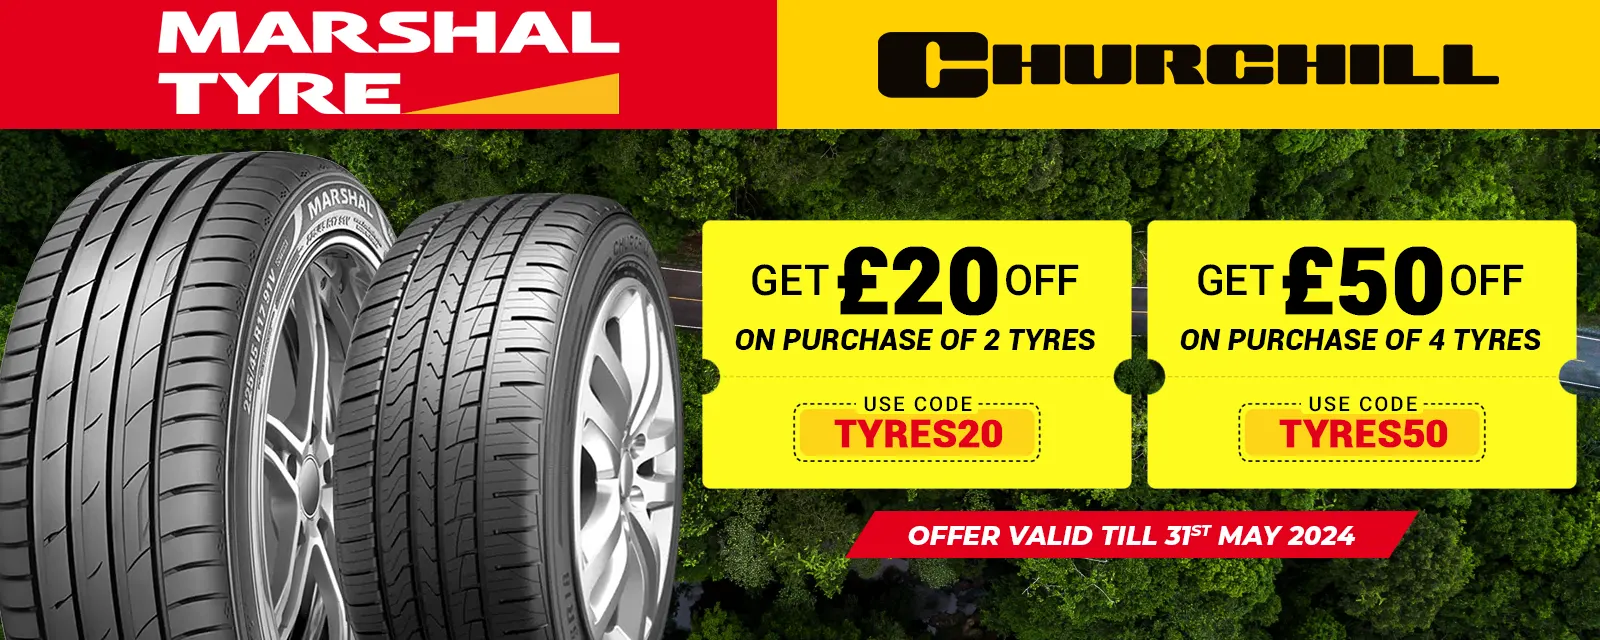 marshal churchill tyres offer